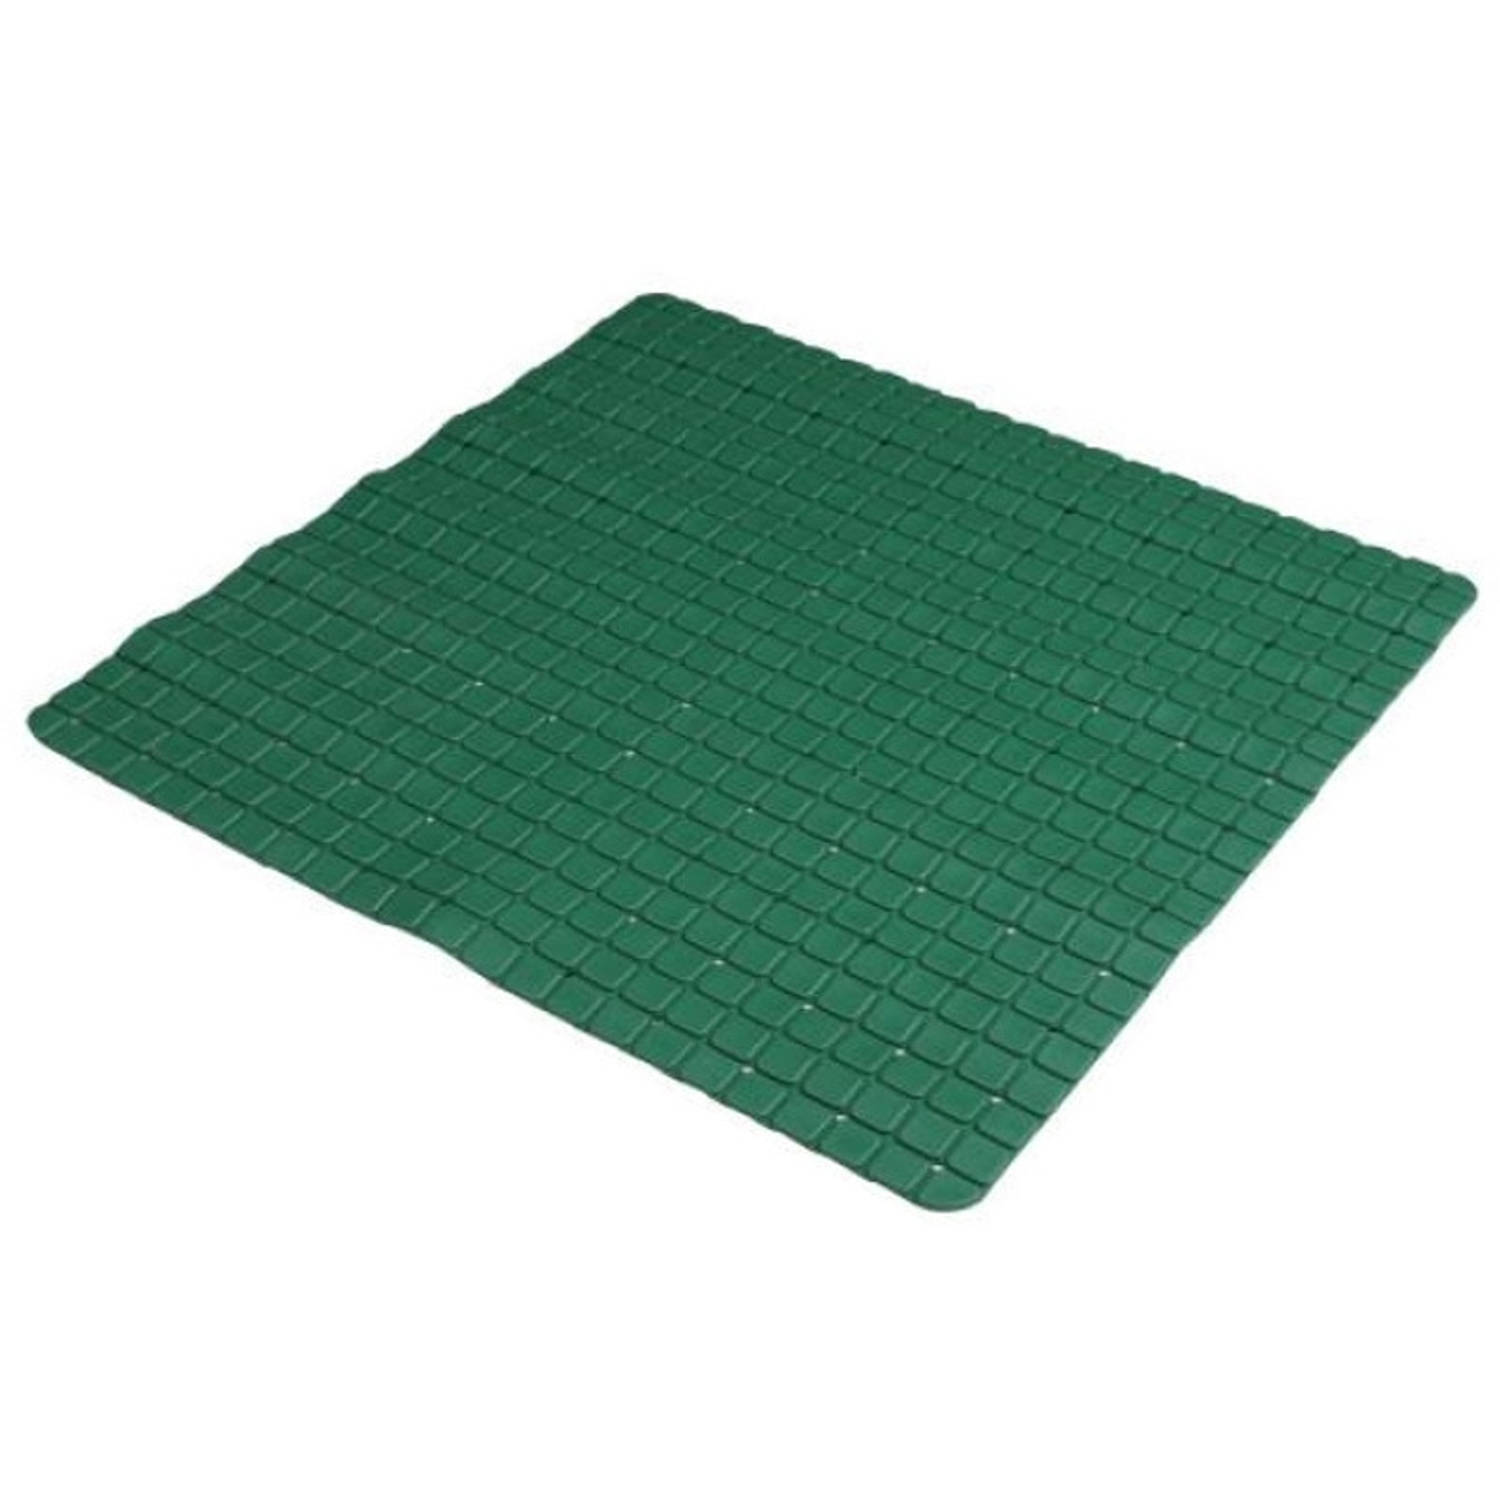 Urban Living Badkamer-douche anti slip mat rubber voor op de vloer groen 55 x 55 cm Badmatjes